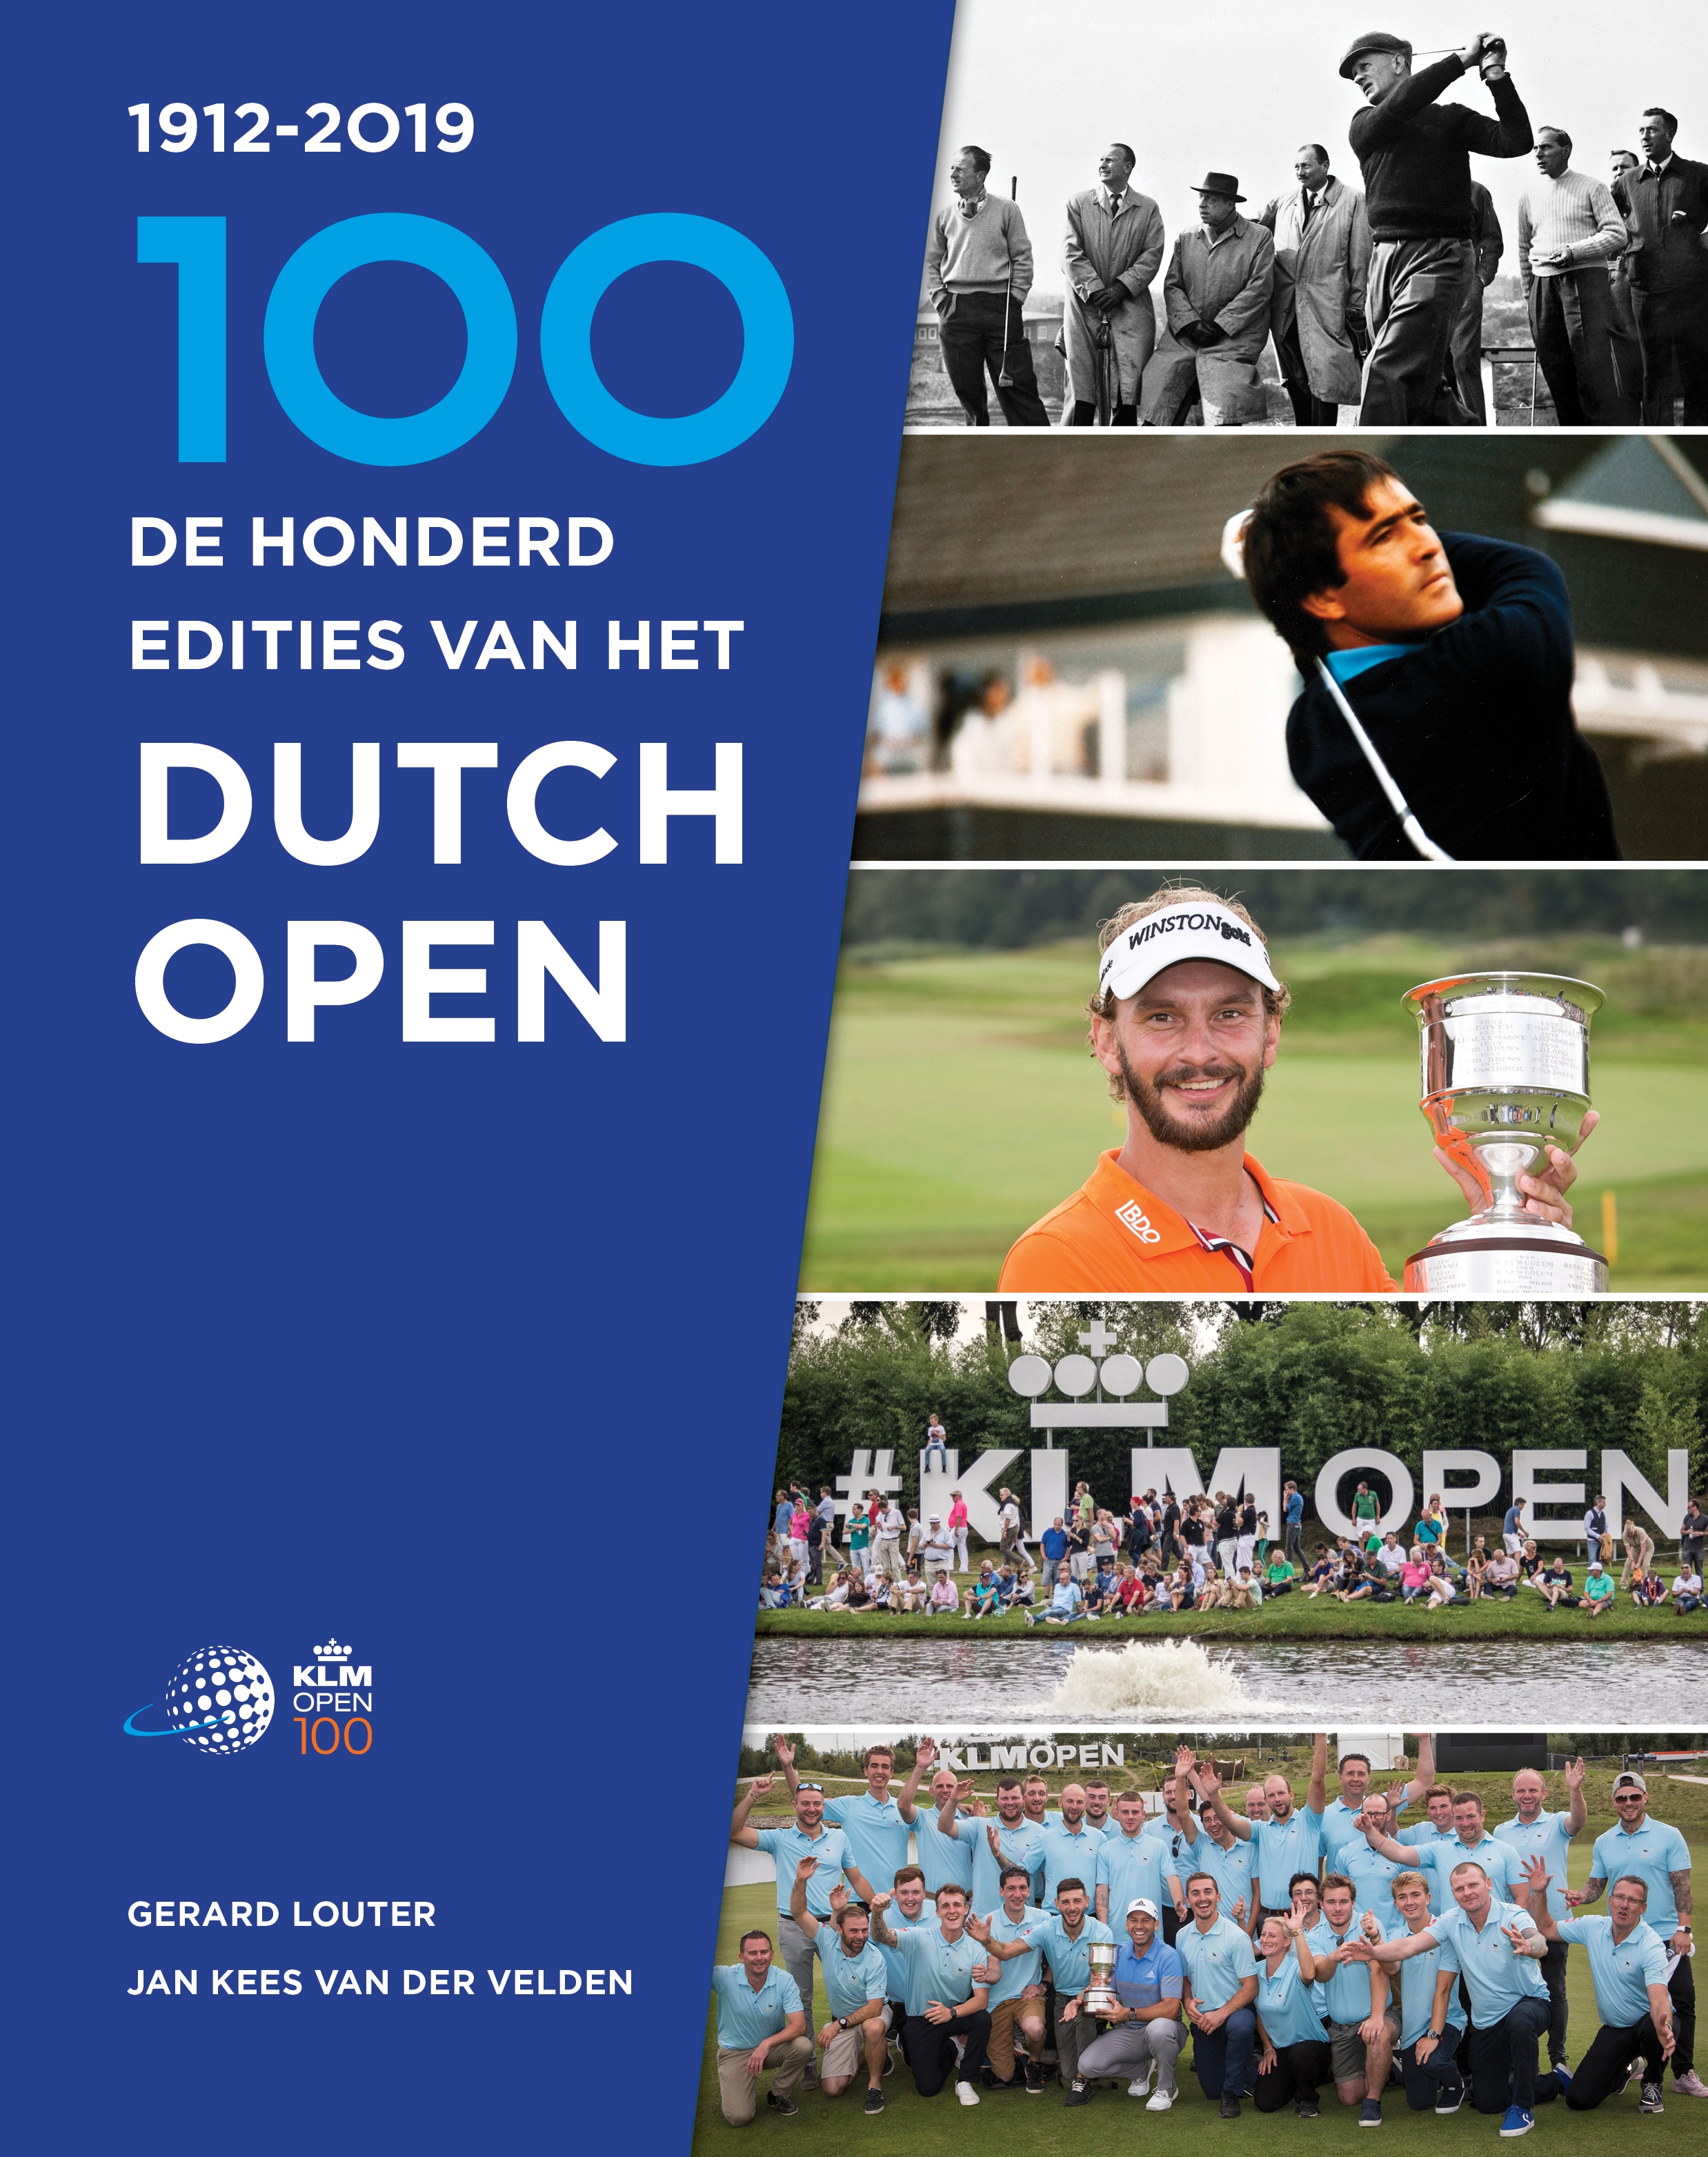 De 100 edities van het Dutch Open